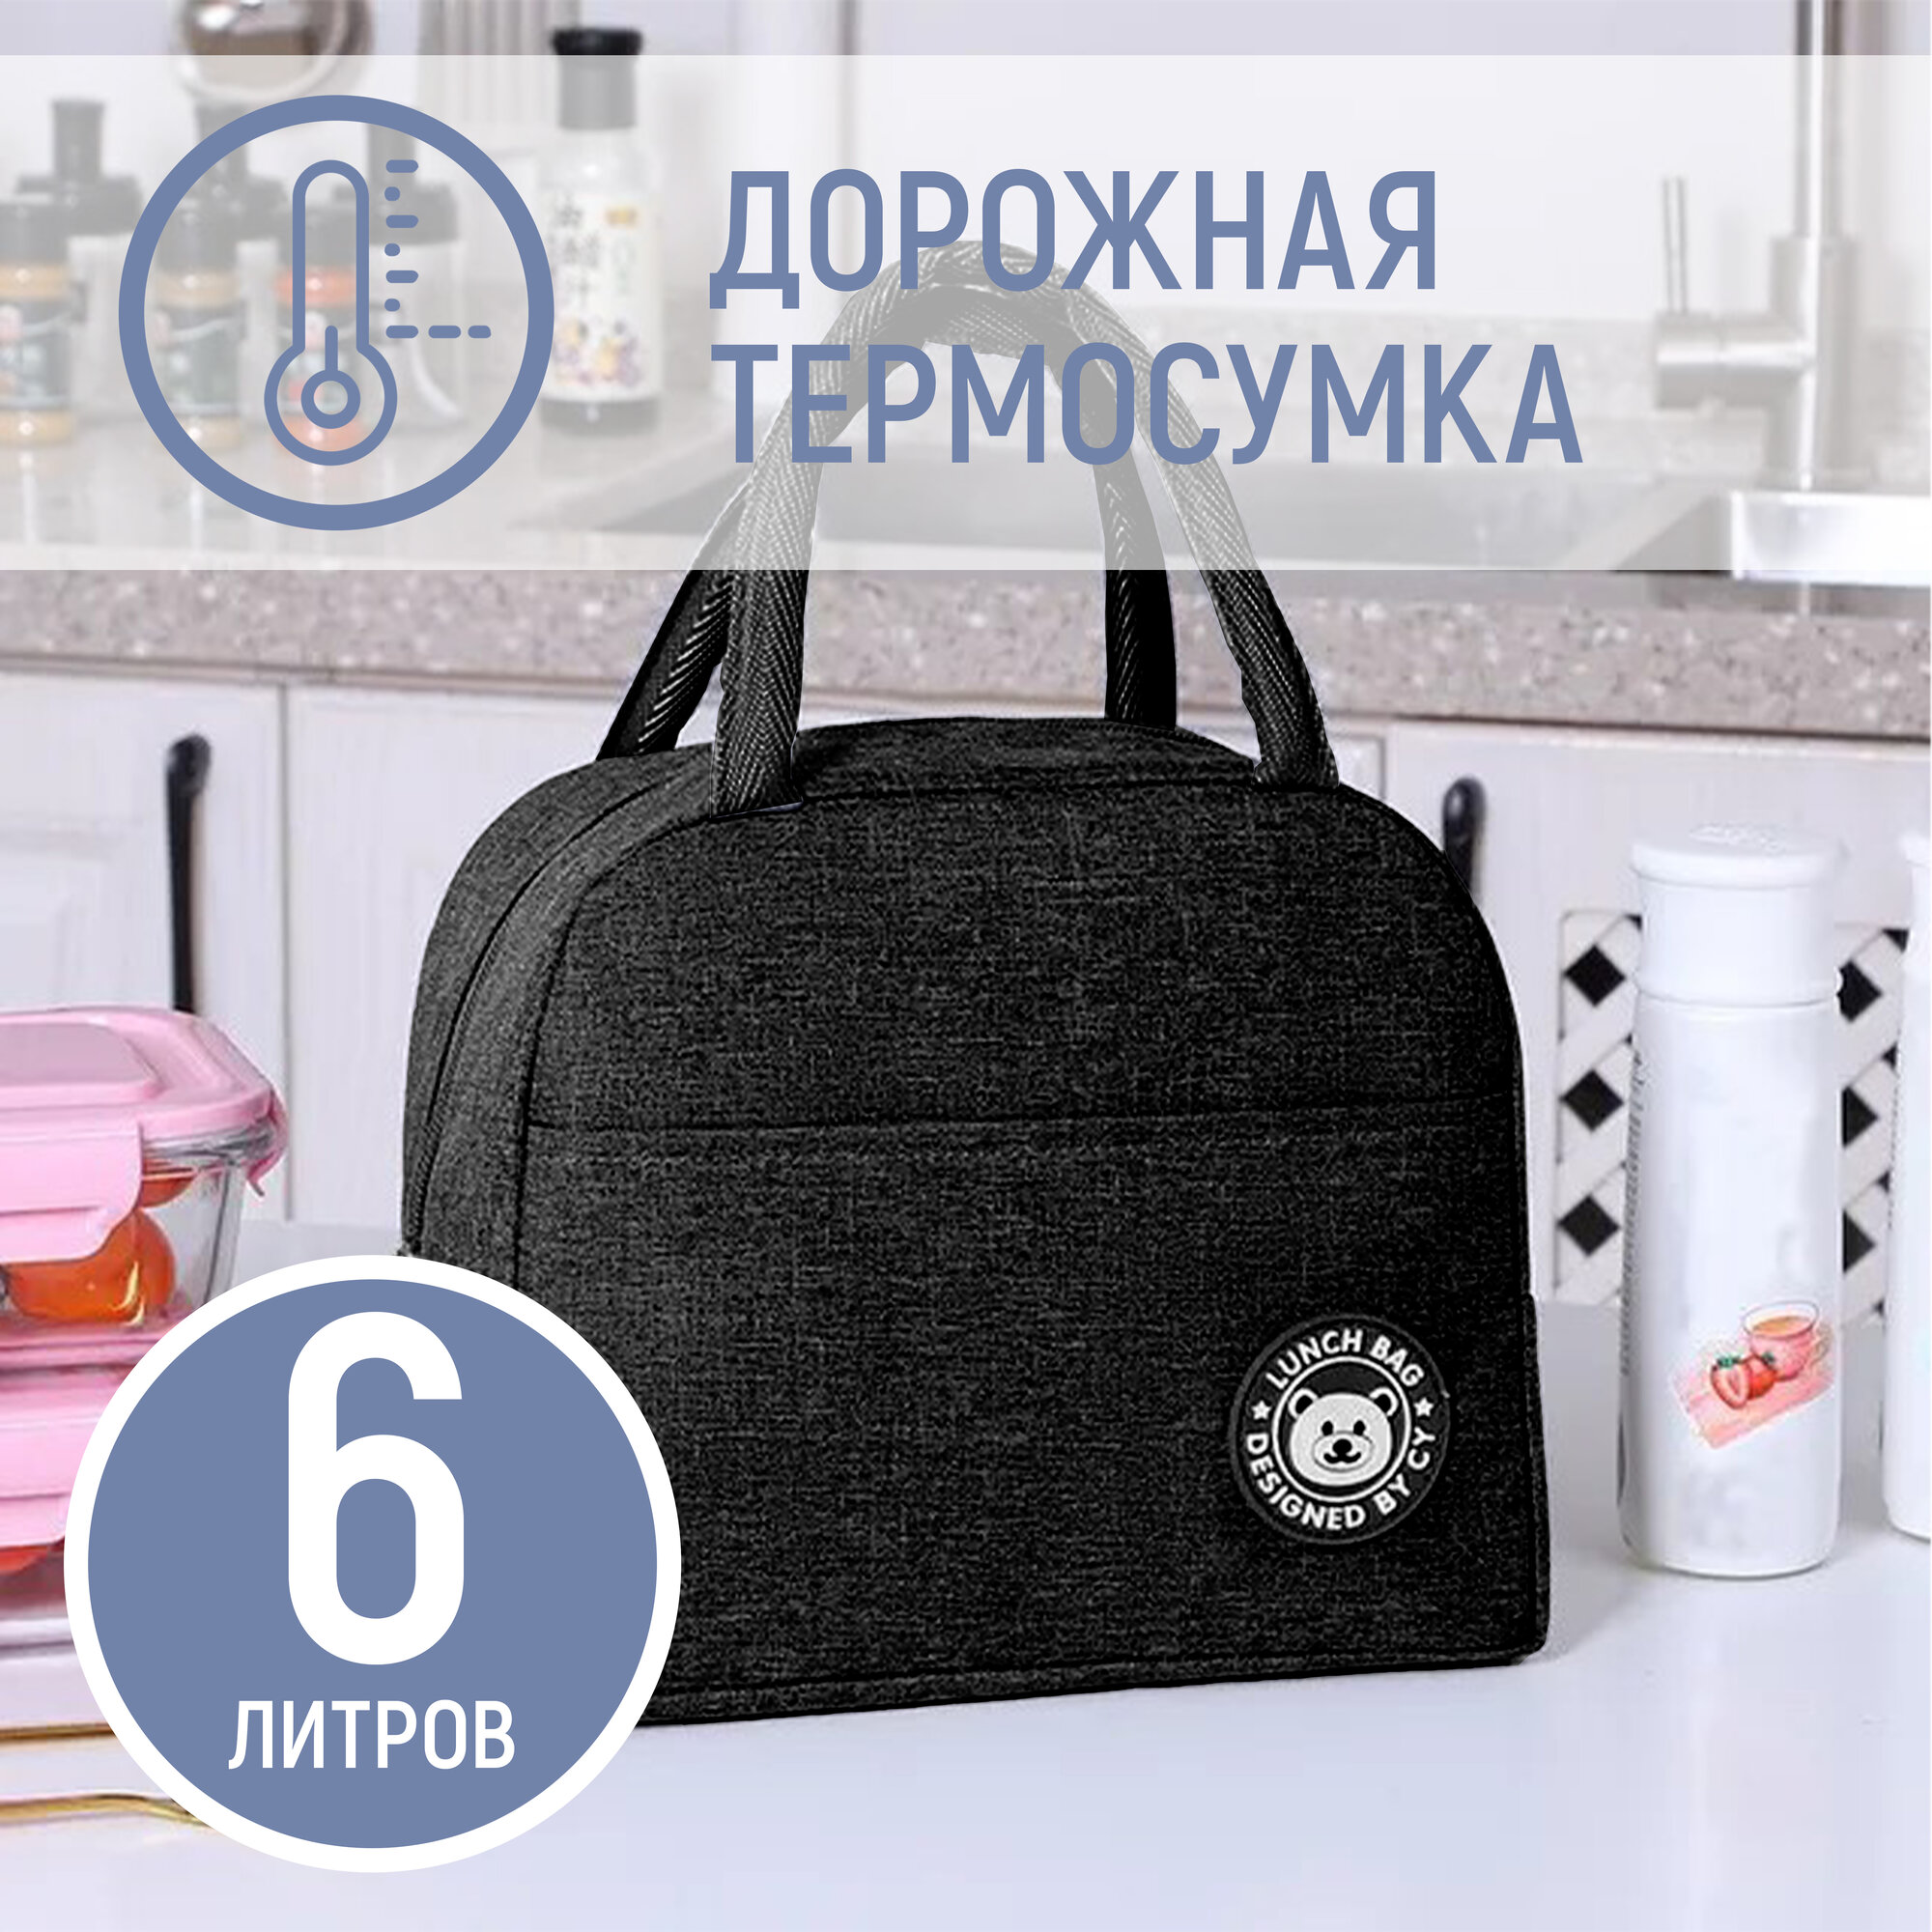 Дорожная термосумка сумка для обеда, ланч-бокса и путешествий 23х21х13см, 6 литров, черная